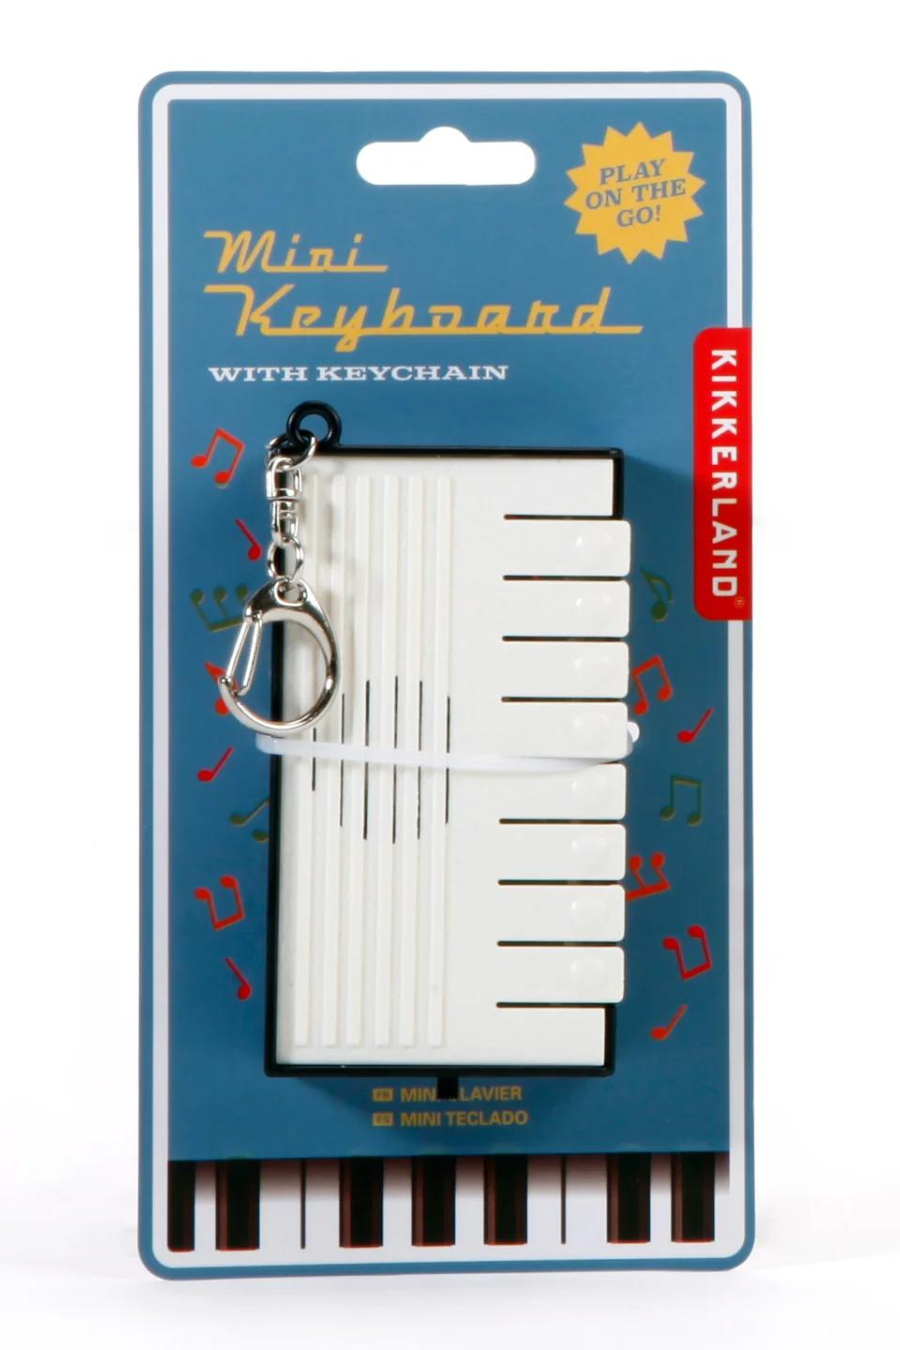 On the Go Mini Piano Keyboard Keychain